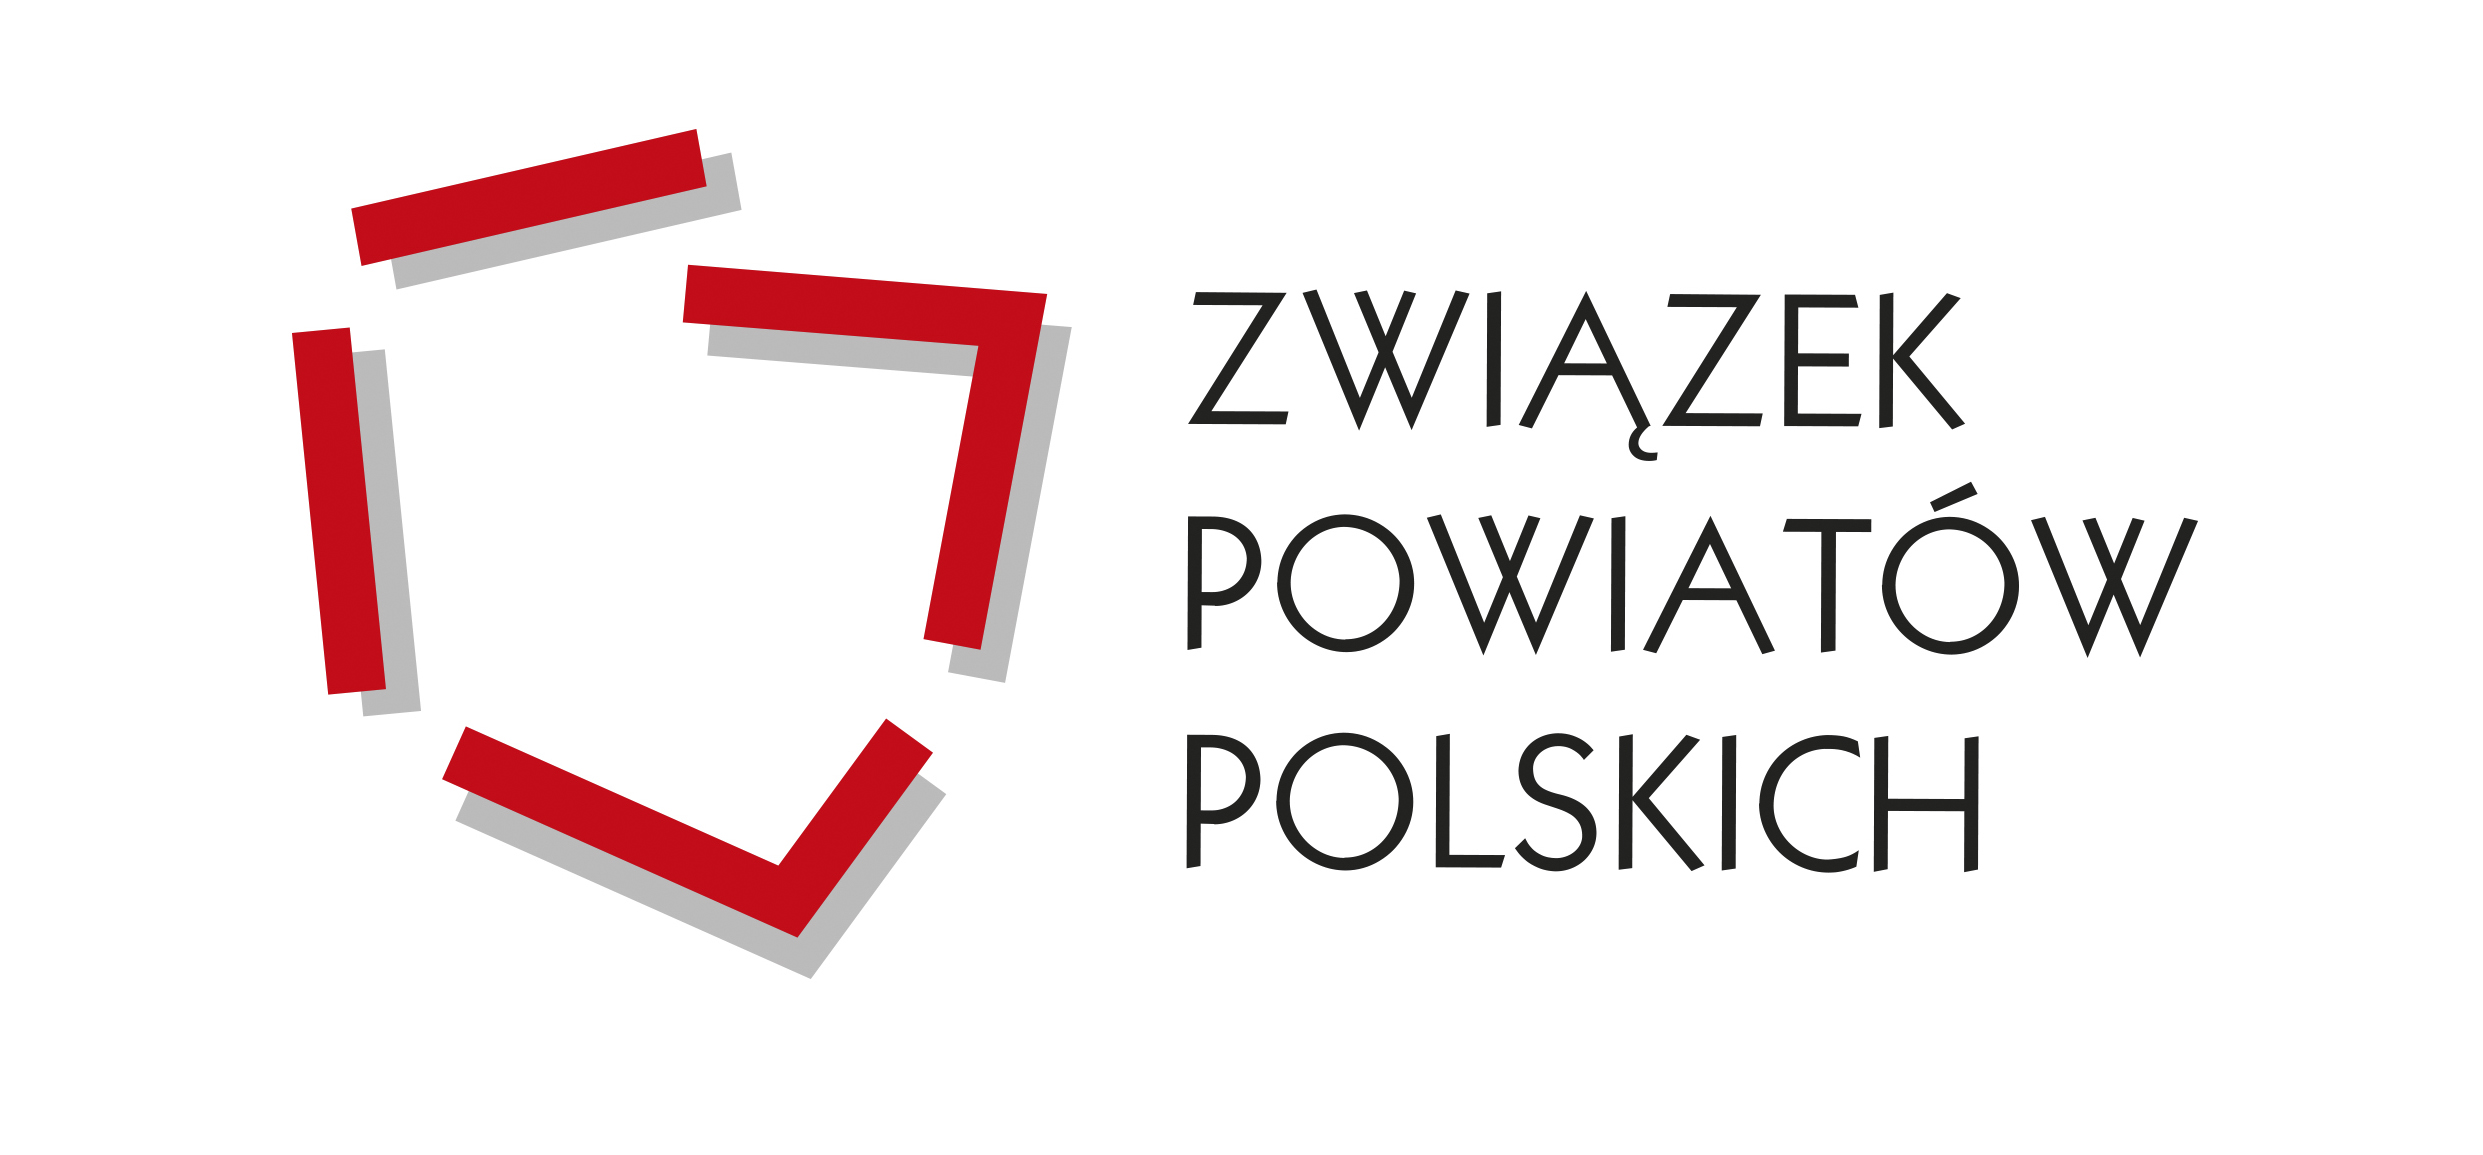 Informacja Związku Powiatów Polskich odnośnie zdrowia i oświaty